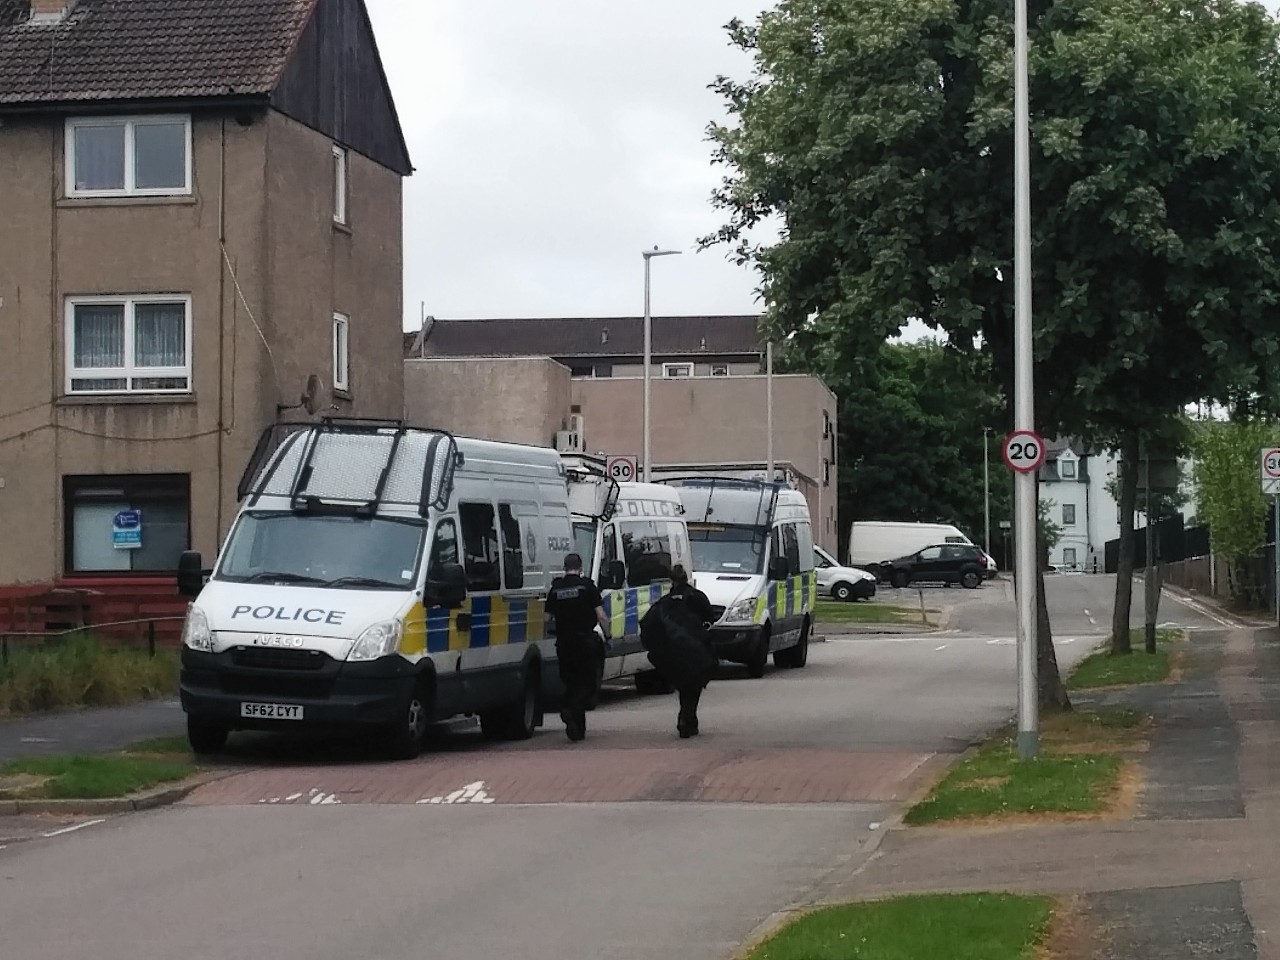 Police presence on Summerhill Road, Aberdeen